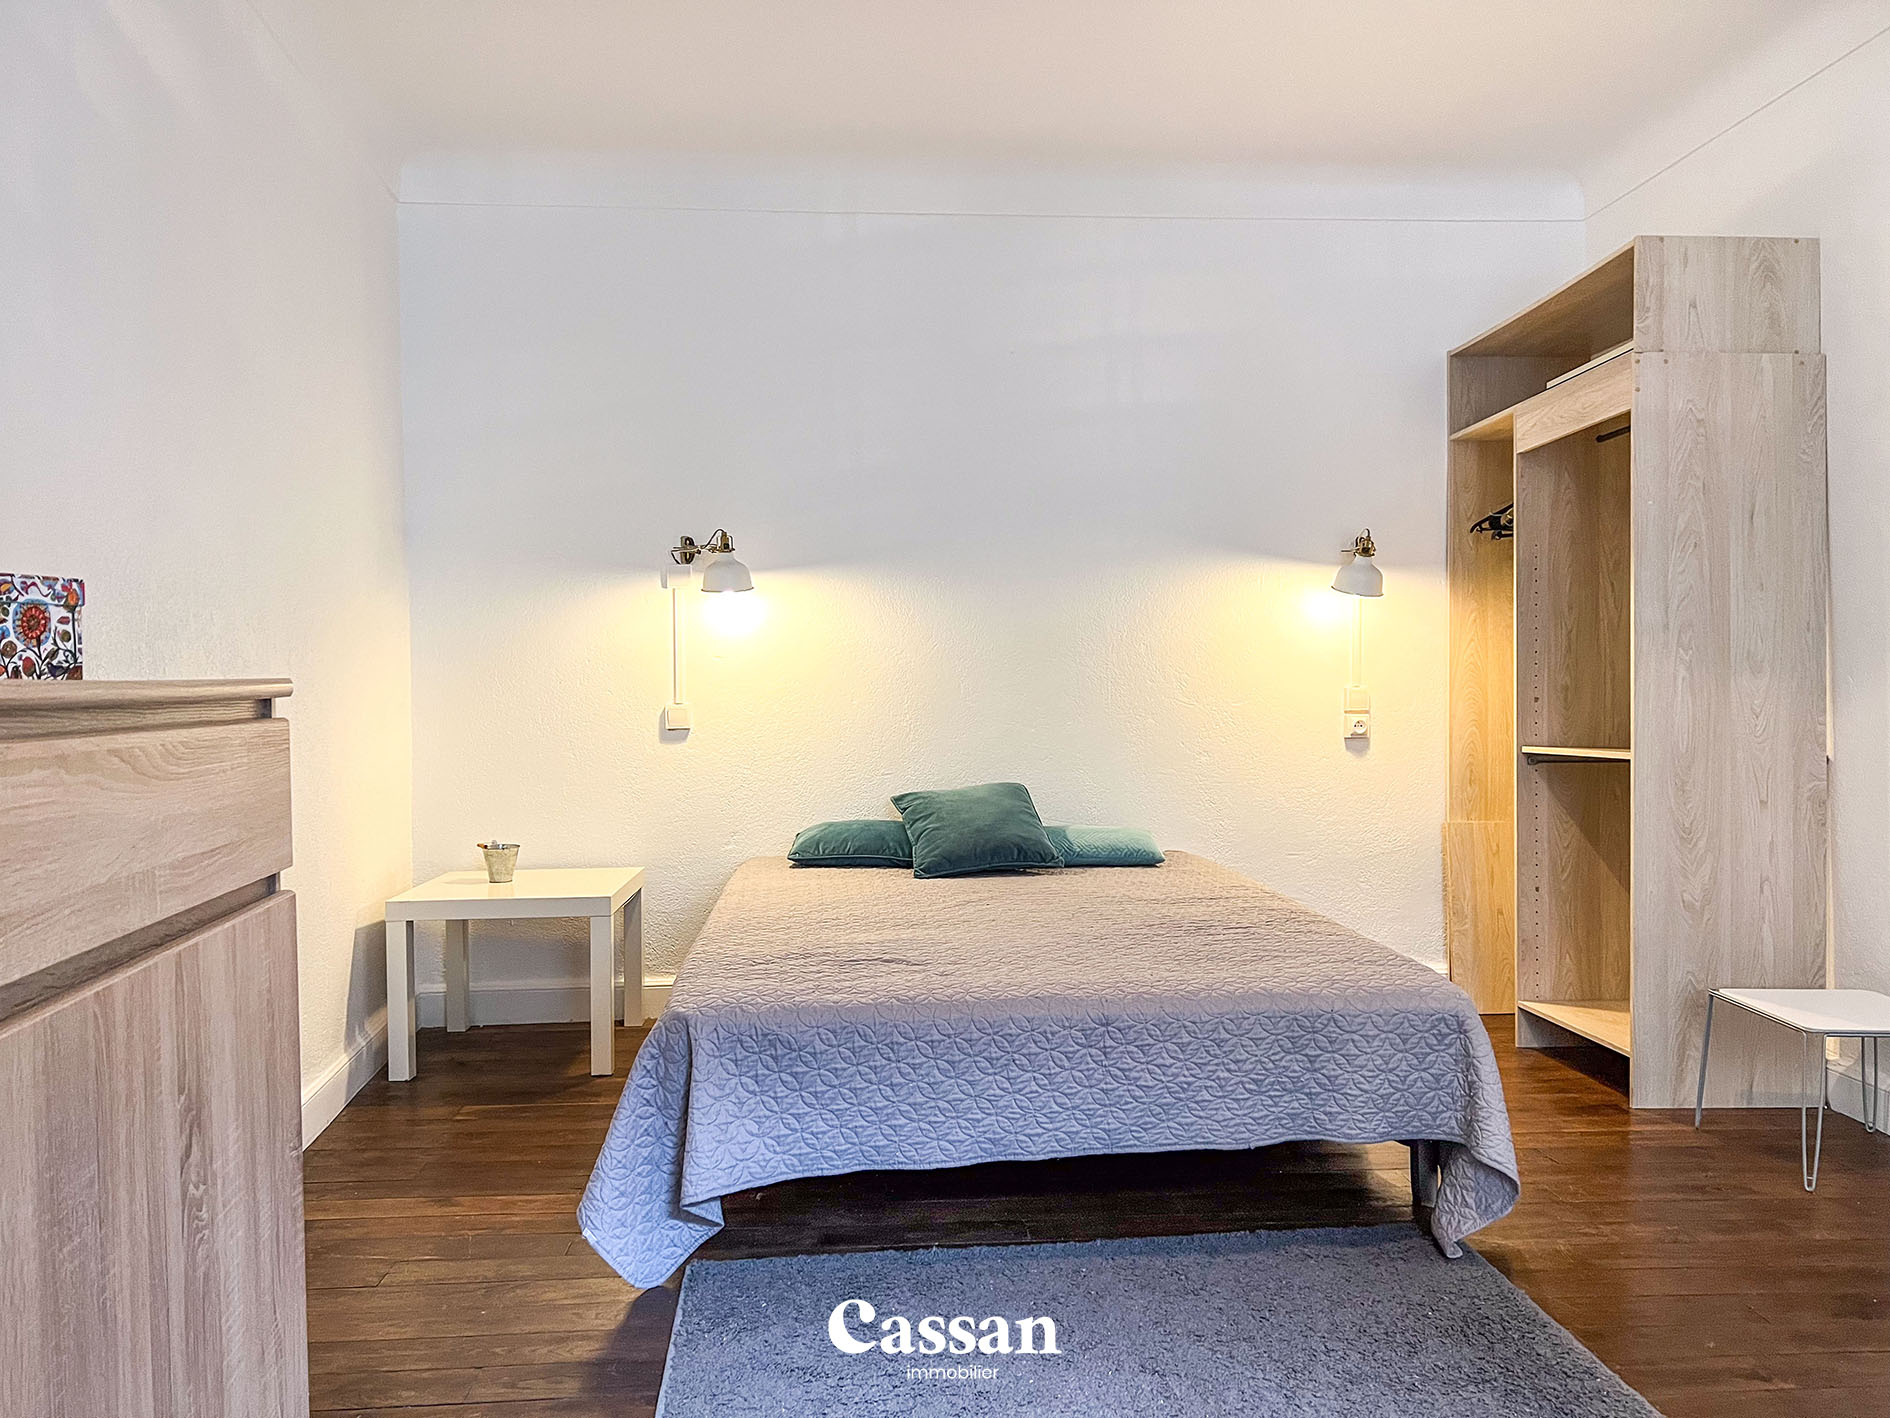 Chambre maison à vendre Aurillac Cassan immobilier agence immobilière